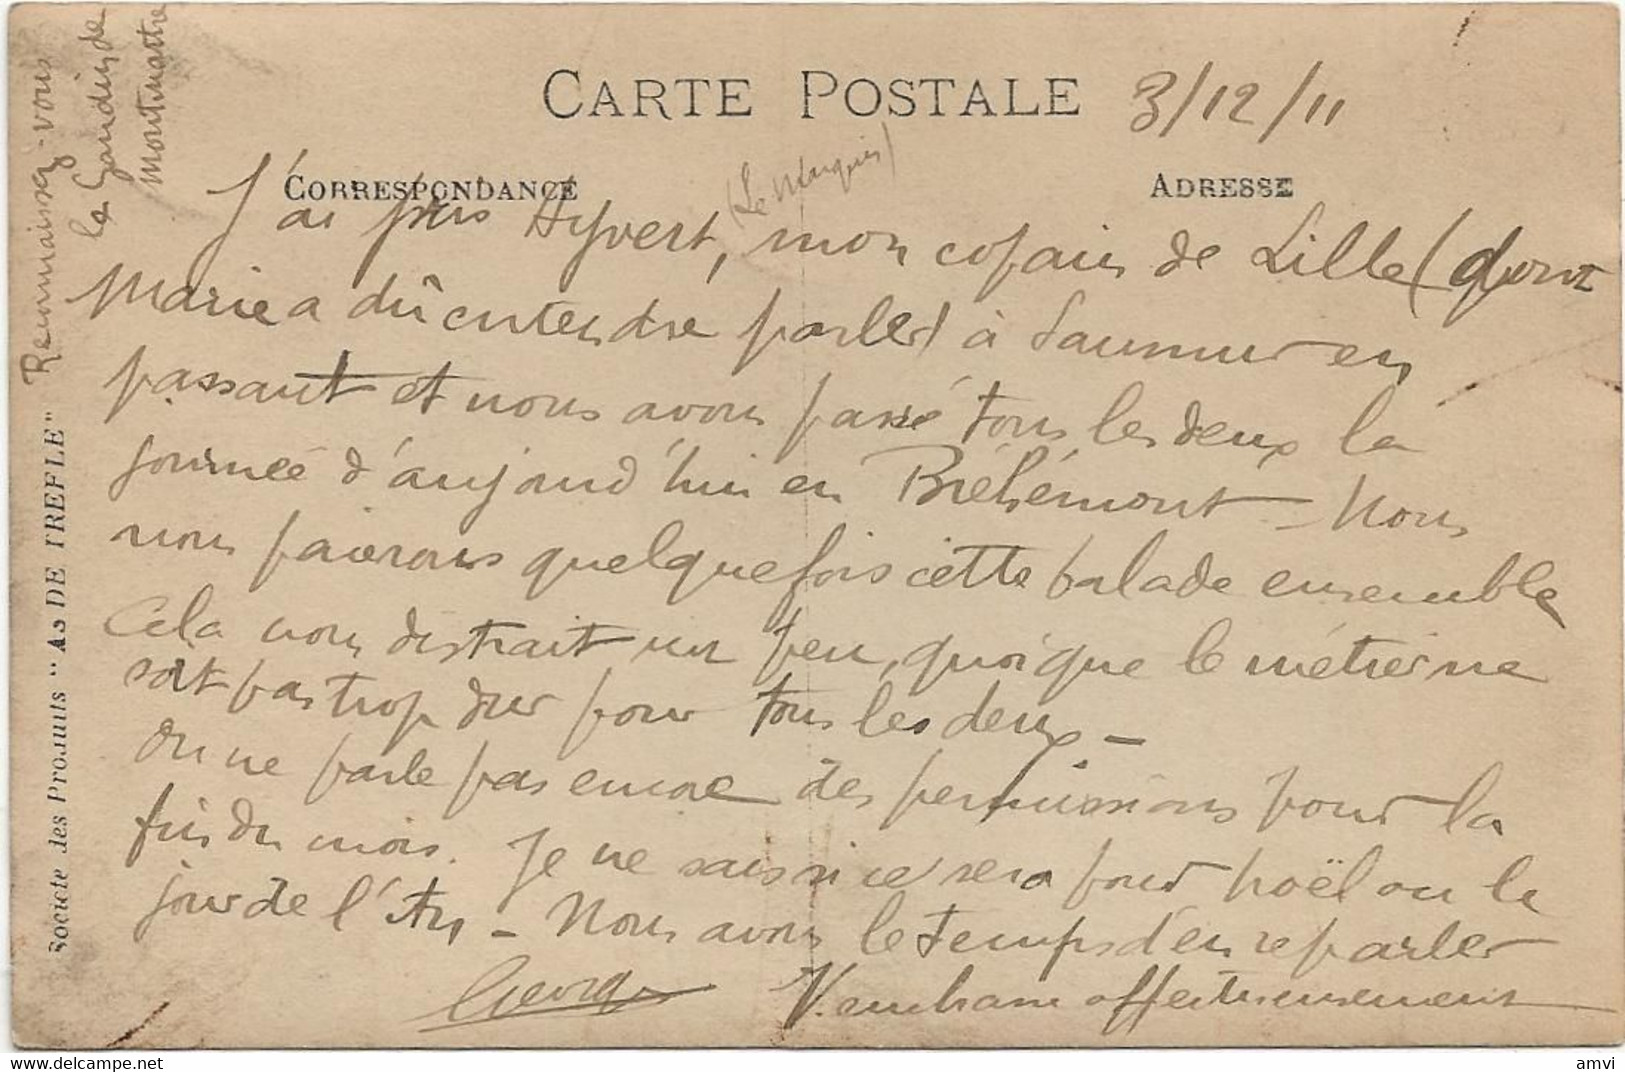 22-8-2589 Carte Photo élèves Caporaux 6eme Genie 1911 Angers - Regimente